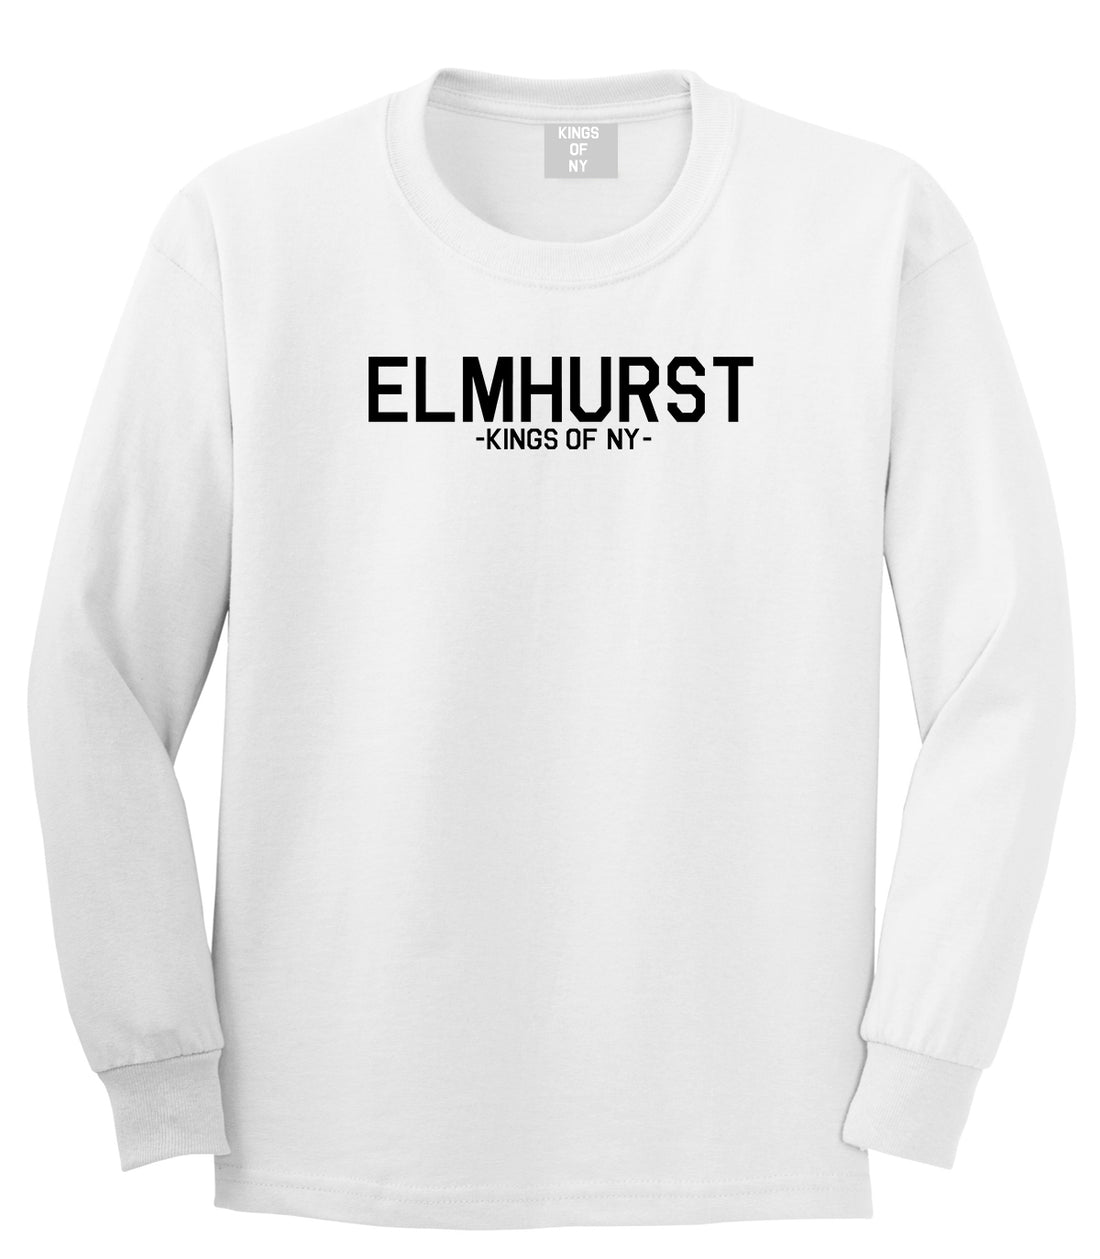 Elmhurst Queens New York Mens Long Sleeve T-Shirt White